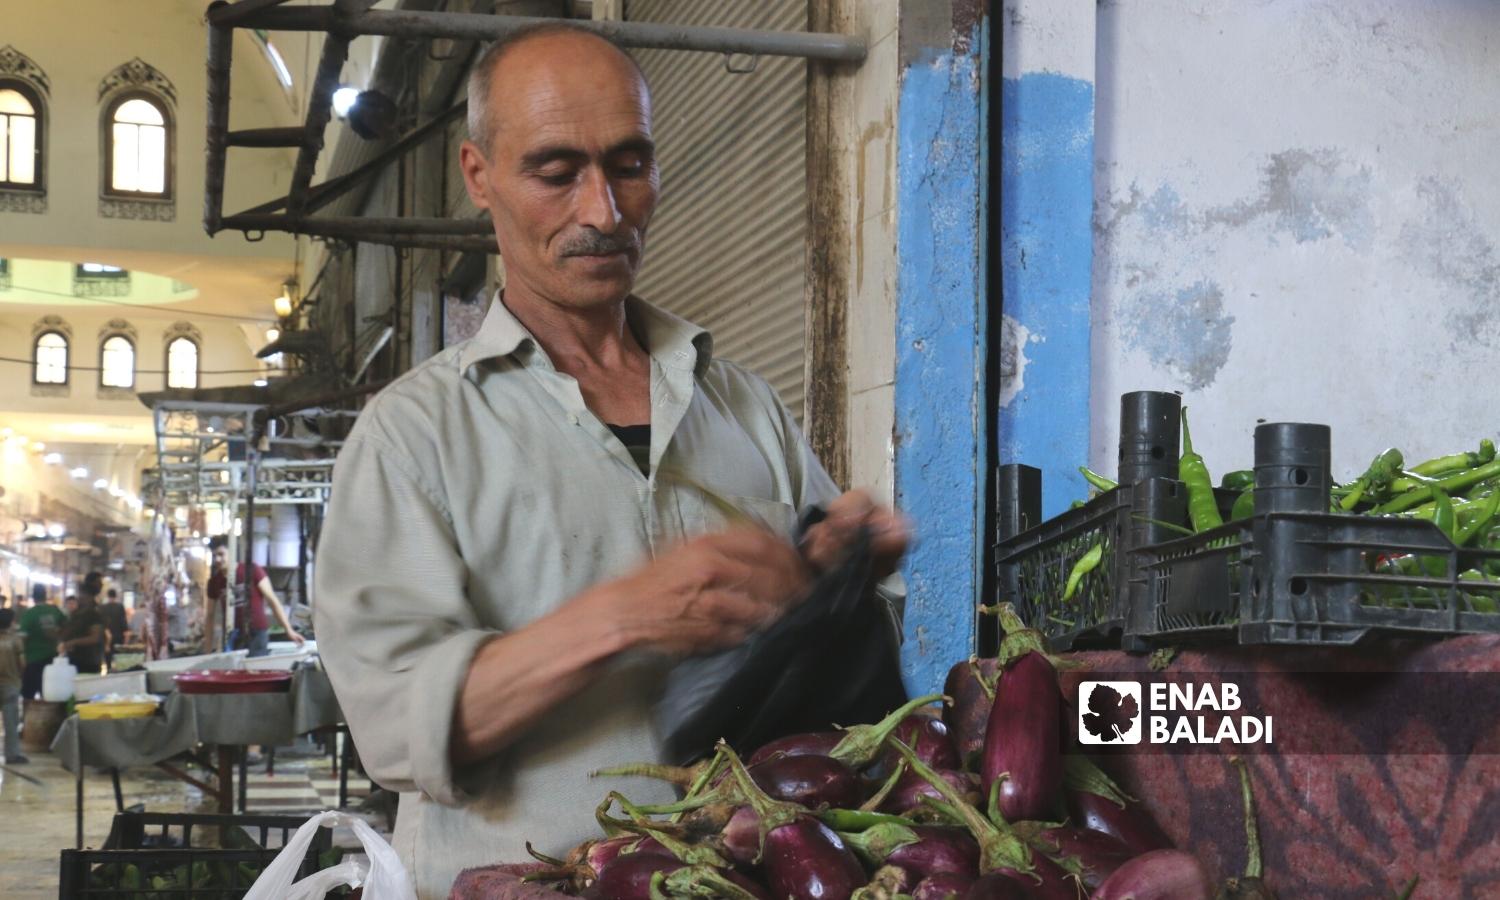  رجل يشتري الخضار في السوق المسقوف بمدينة إعزاز بريف حلب الشمالي - 2 أيلول 2022 (عنب بلدي / ديان جنباز)